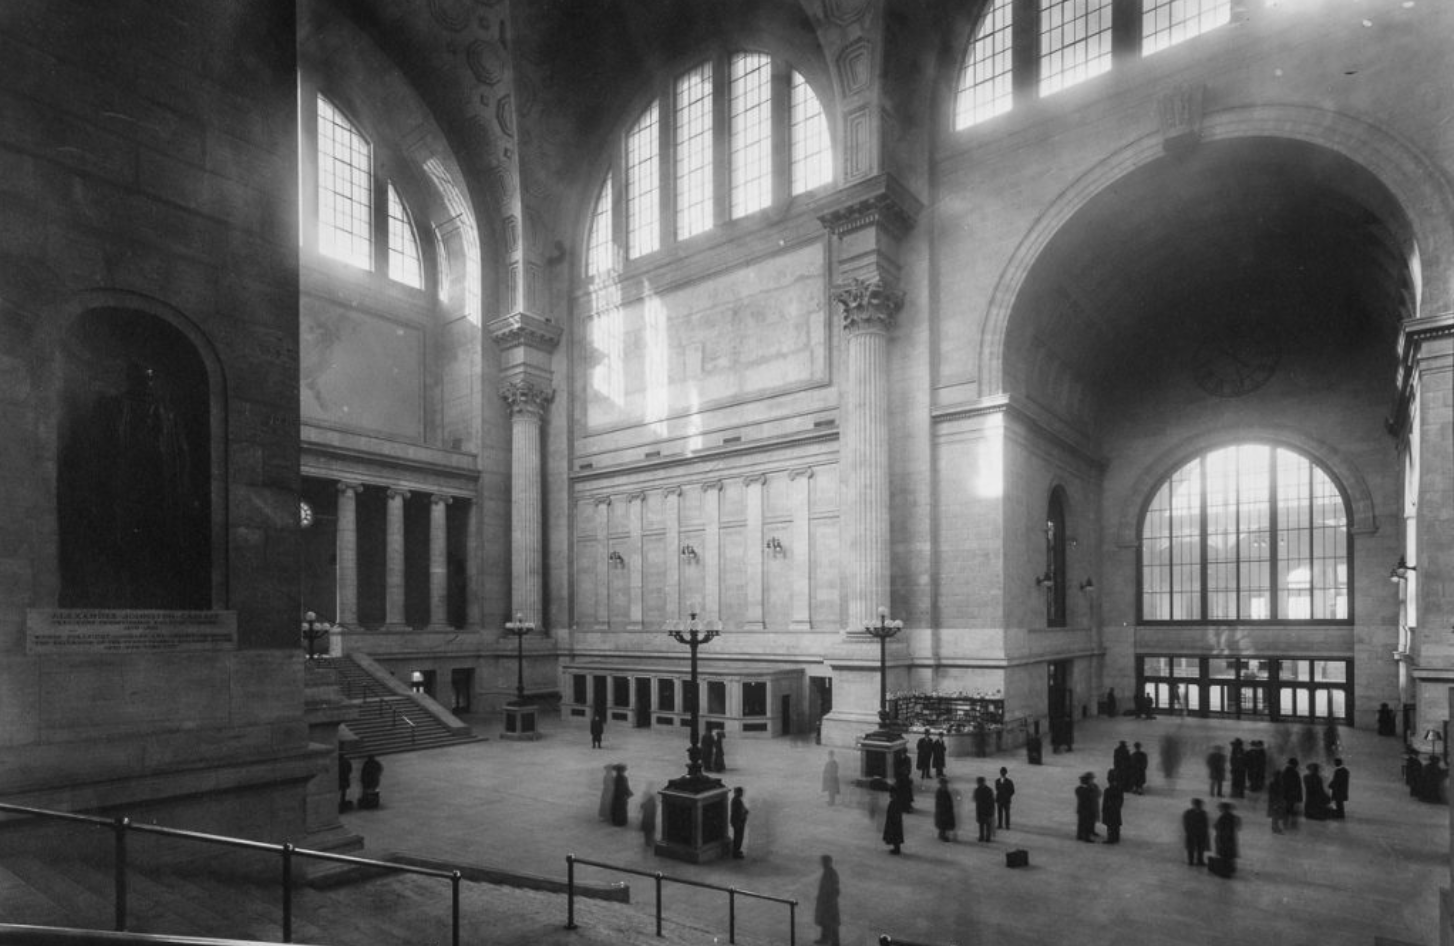 Abriss der alten Penn Station, gilt heute als eine der größten Architektursünden in der Geschichte New Yorks – mit tollen Fotos